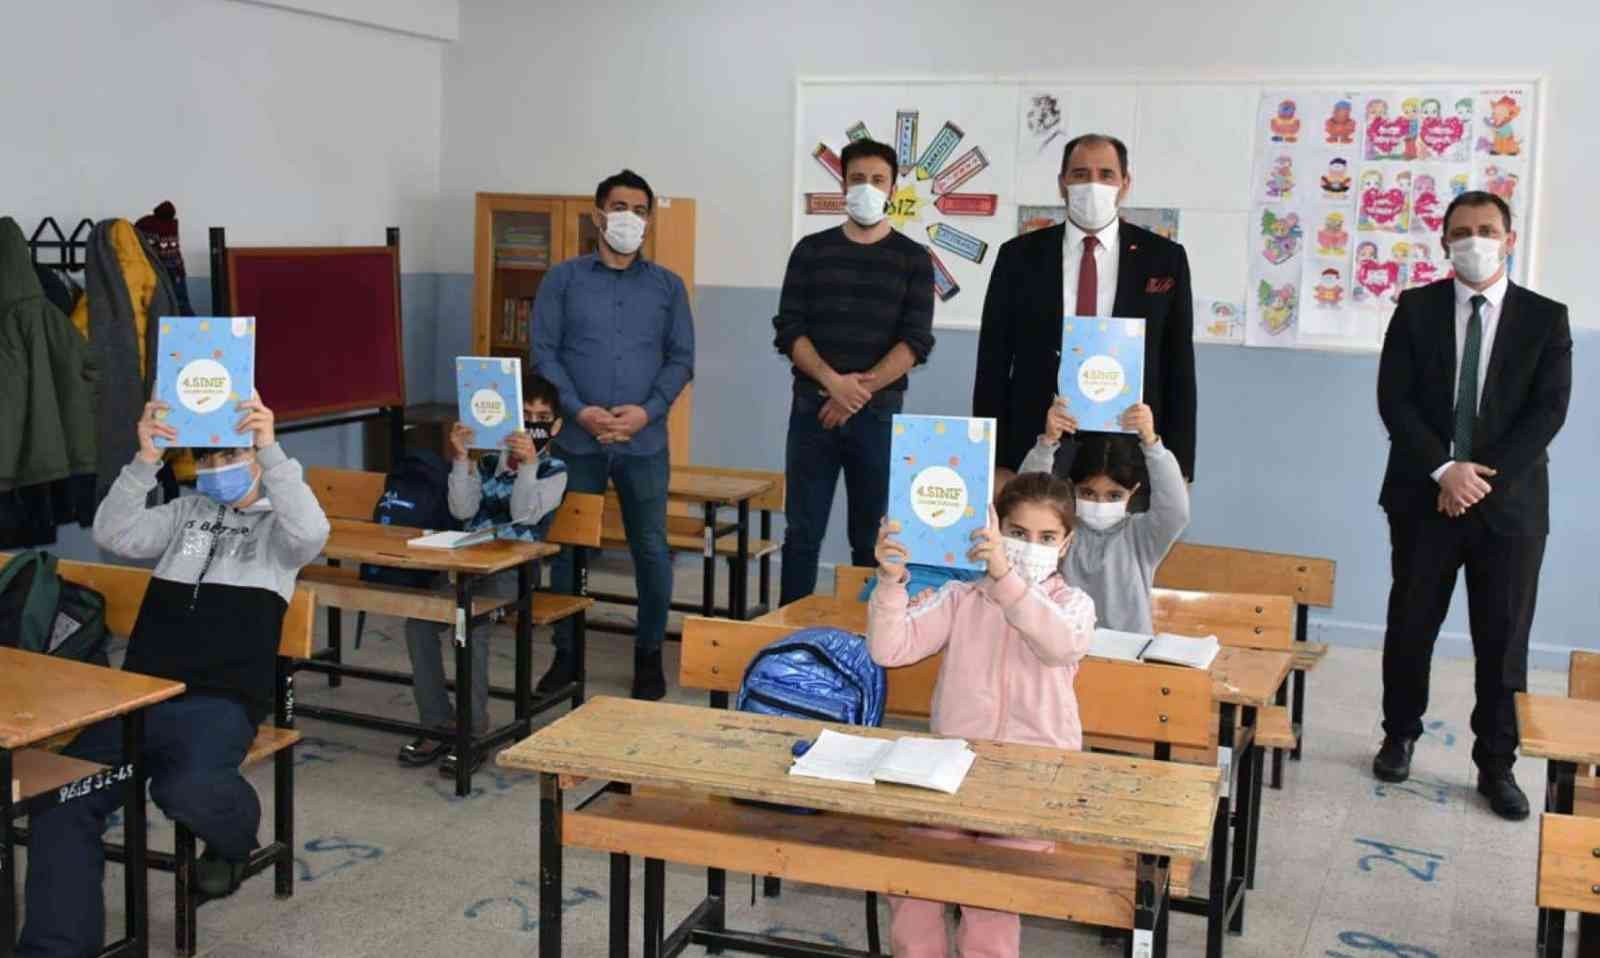 Yardımcı kaynak kitaplar öğrencilere ulaştırıldı #erzincan